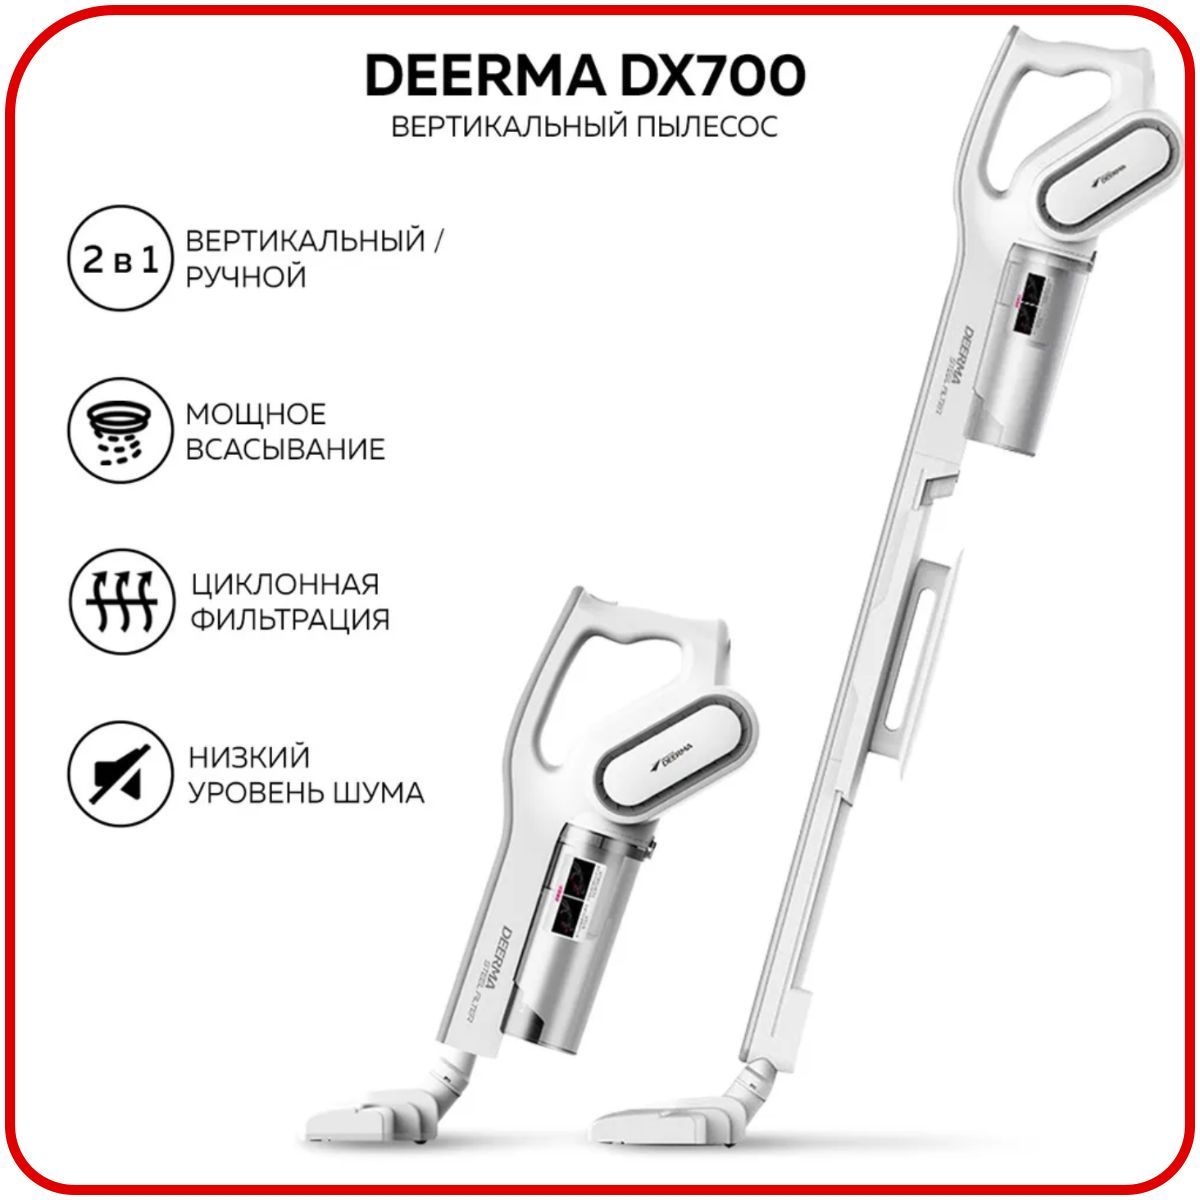 Пылесос вертикальный dx700 отзывы. Пылесос Deerma dx700s. Ручной пылесос Xiaomi Deerma dx700s. Пылесос вертикальный Xiaomi Deerma dx700s. Вертикальный пылесос Xiaomi Deerma Vacuum Cleaner (dx700s).